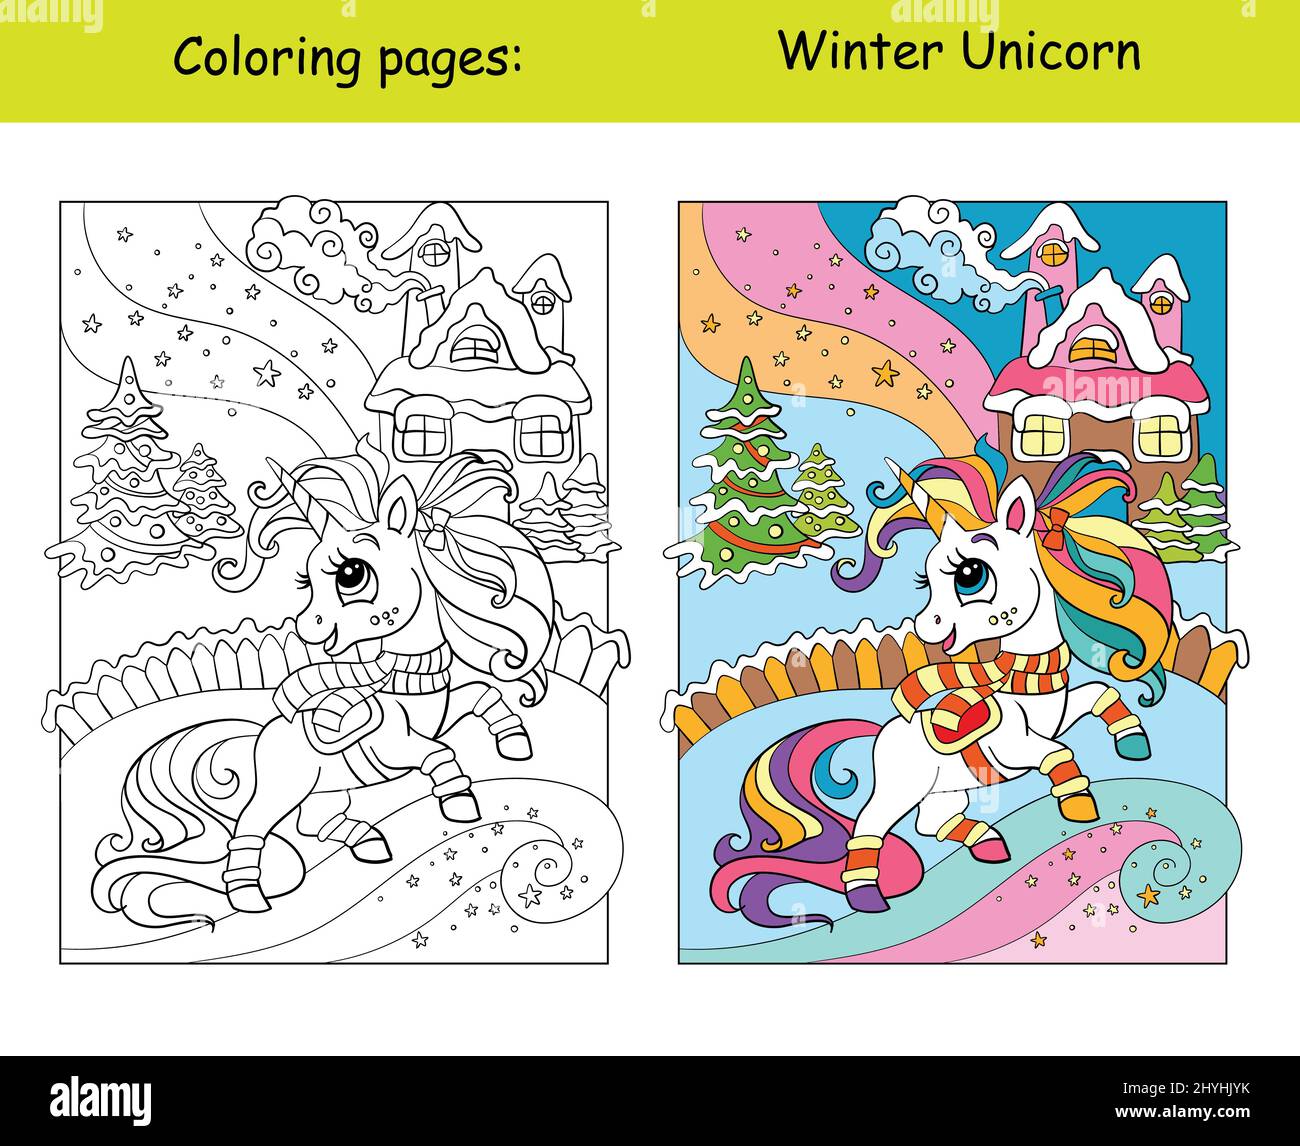 Dessin a colorier noel Banque d'images vectorielles - Page 2 - Alamy